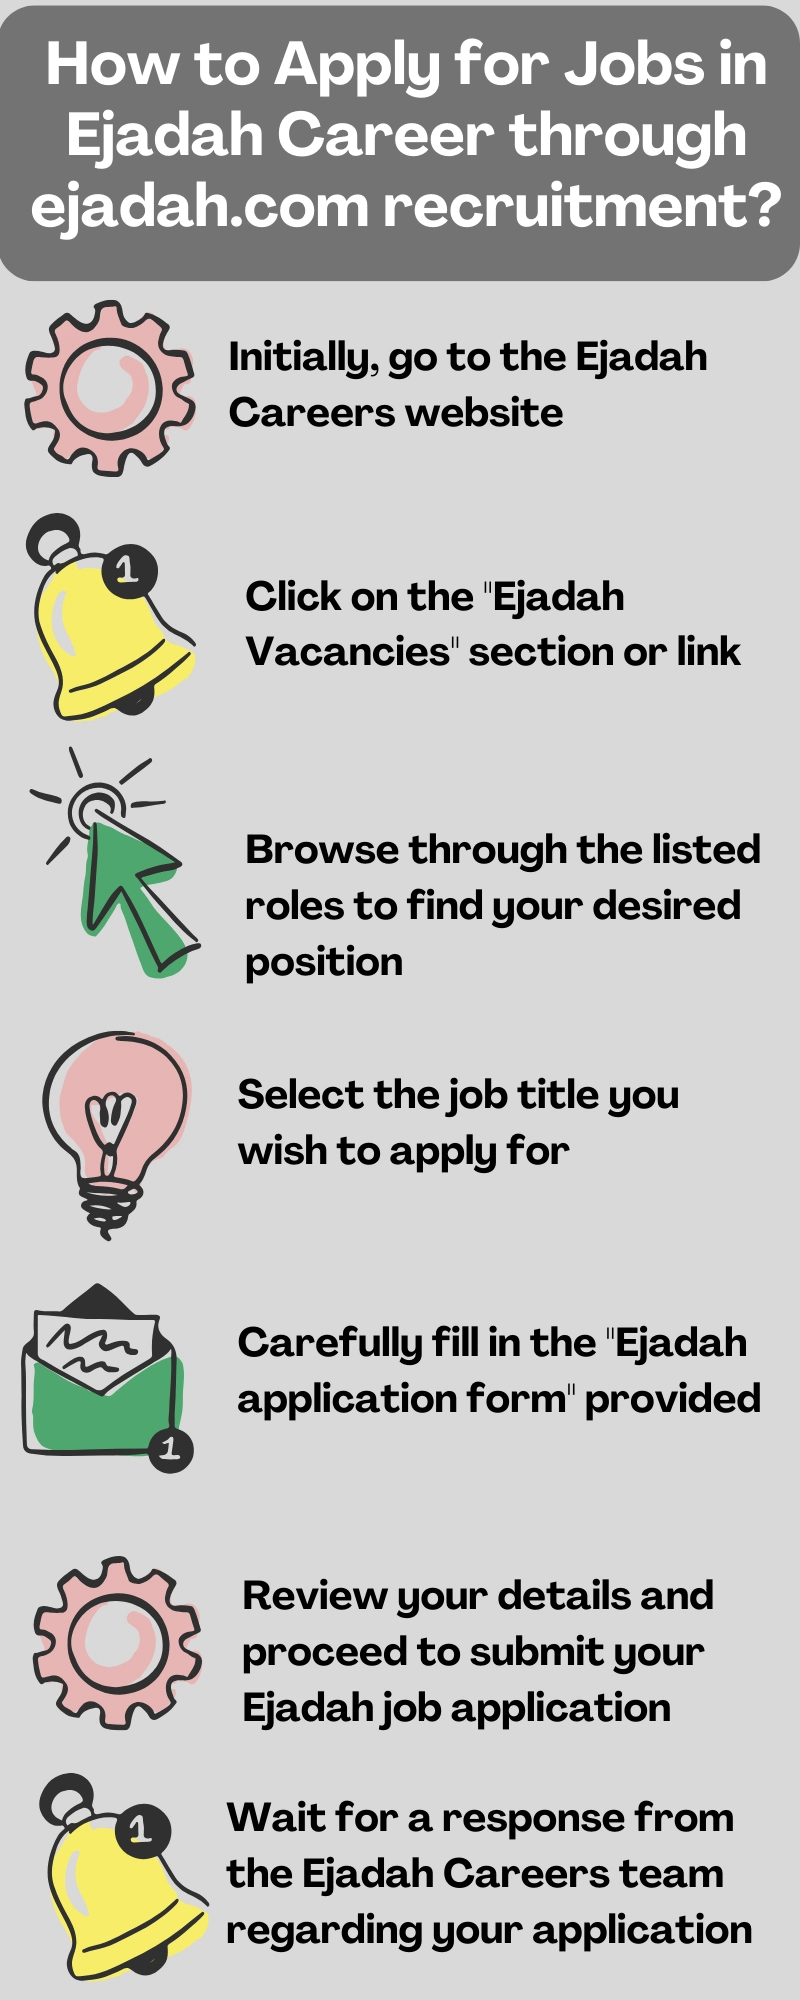 How to Apply for Jobs in Ejadah Career through ejadah.com recruitment?